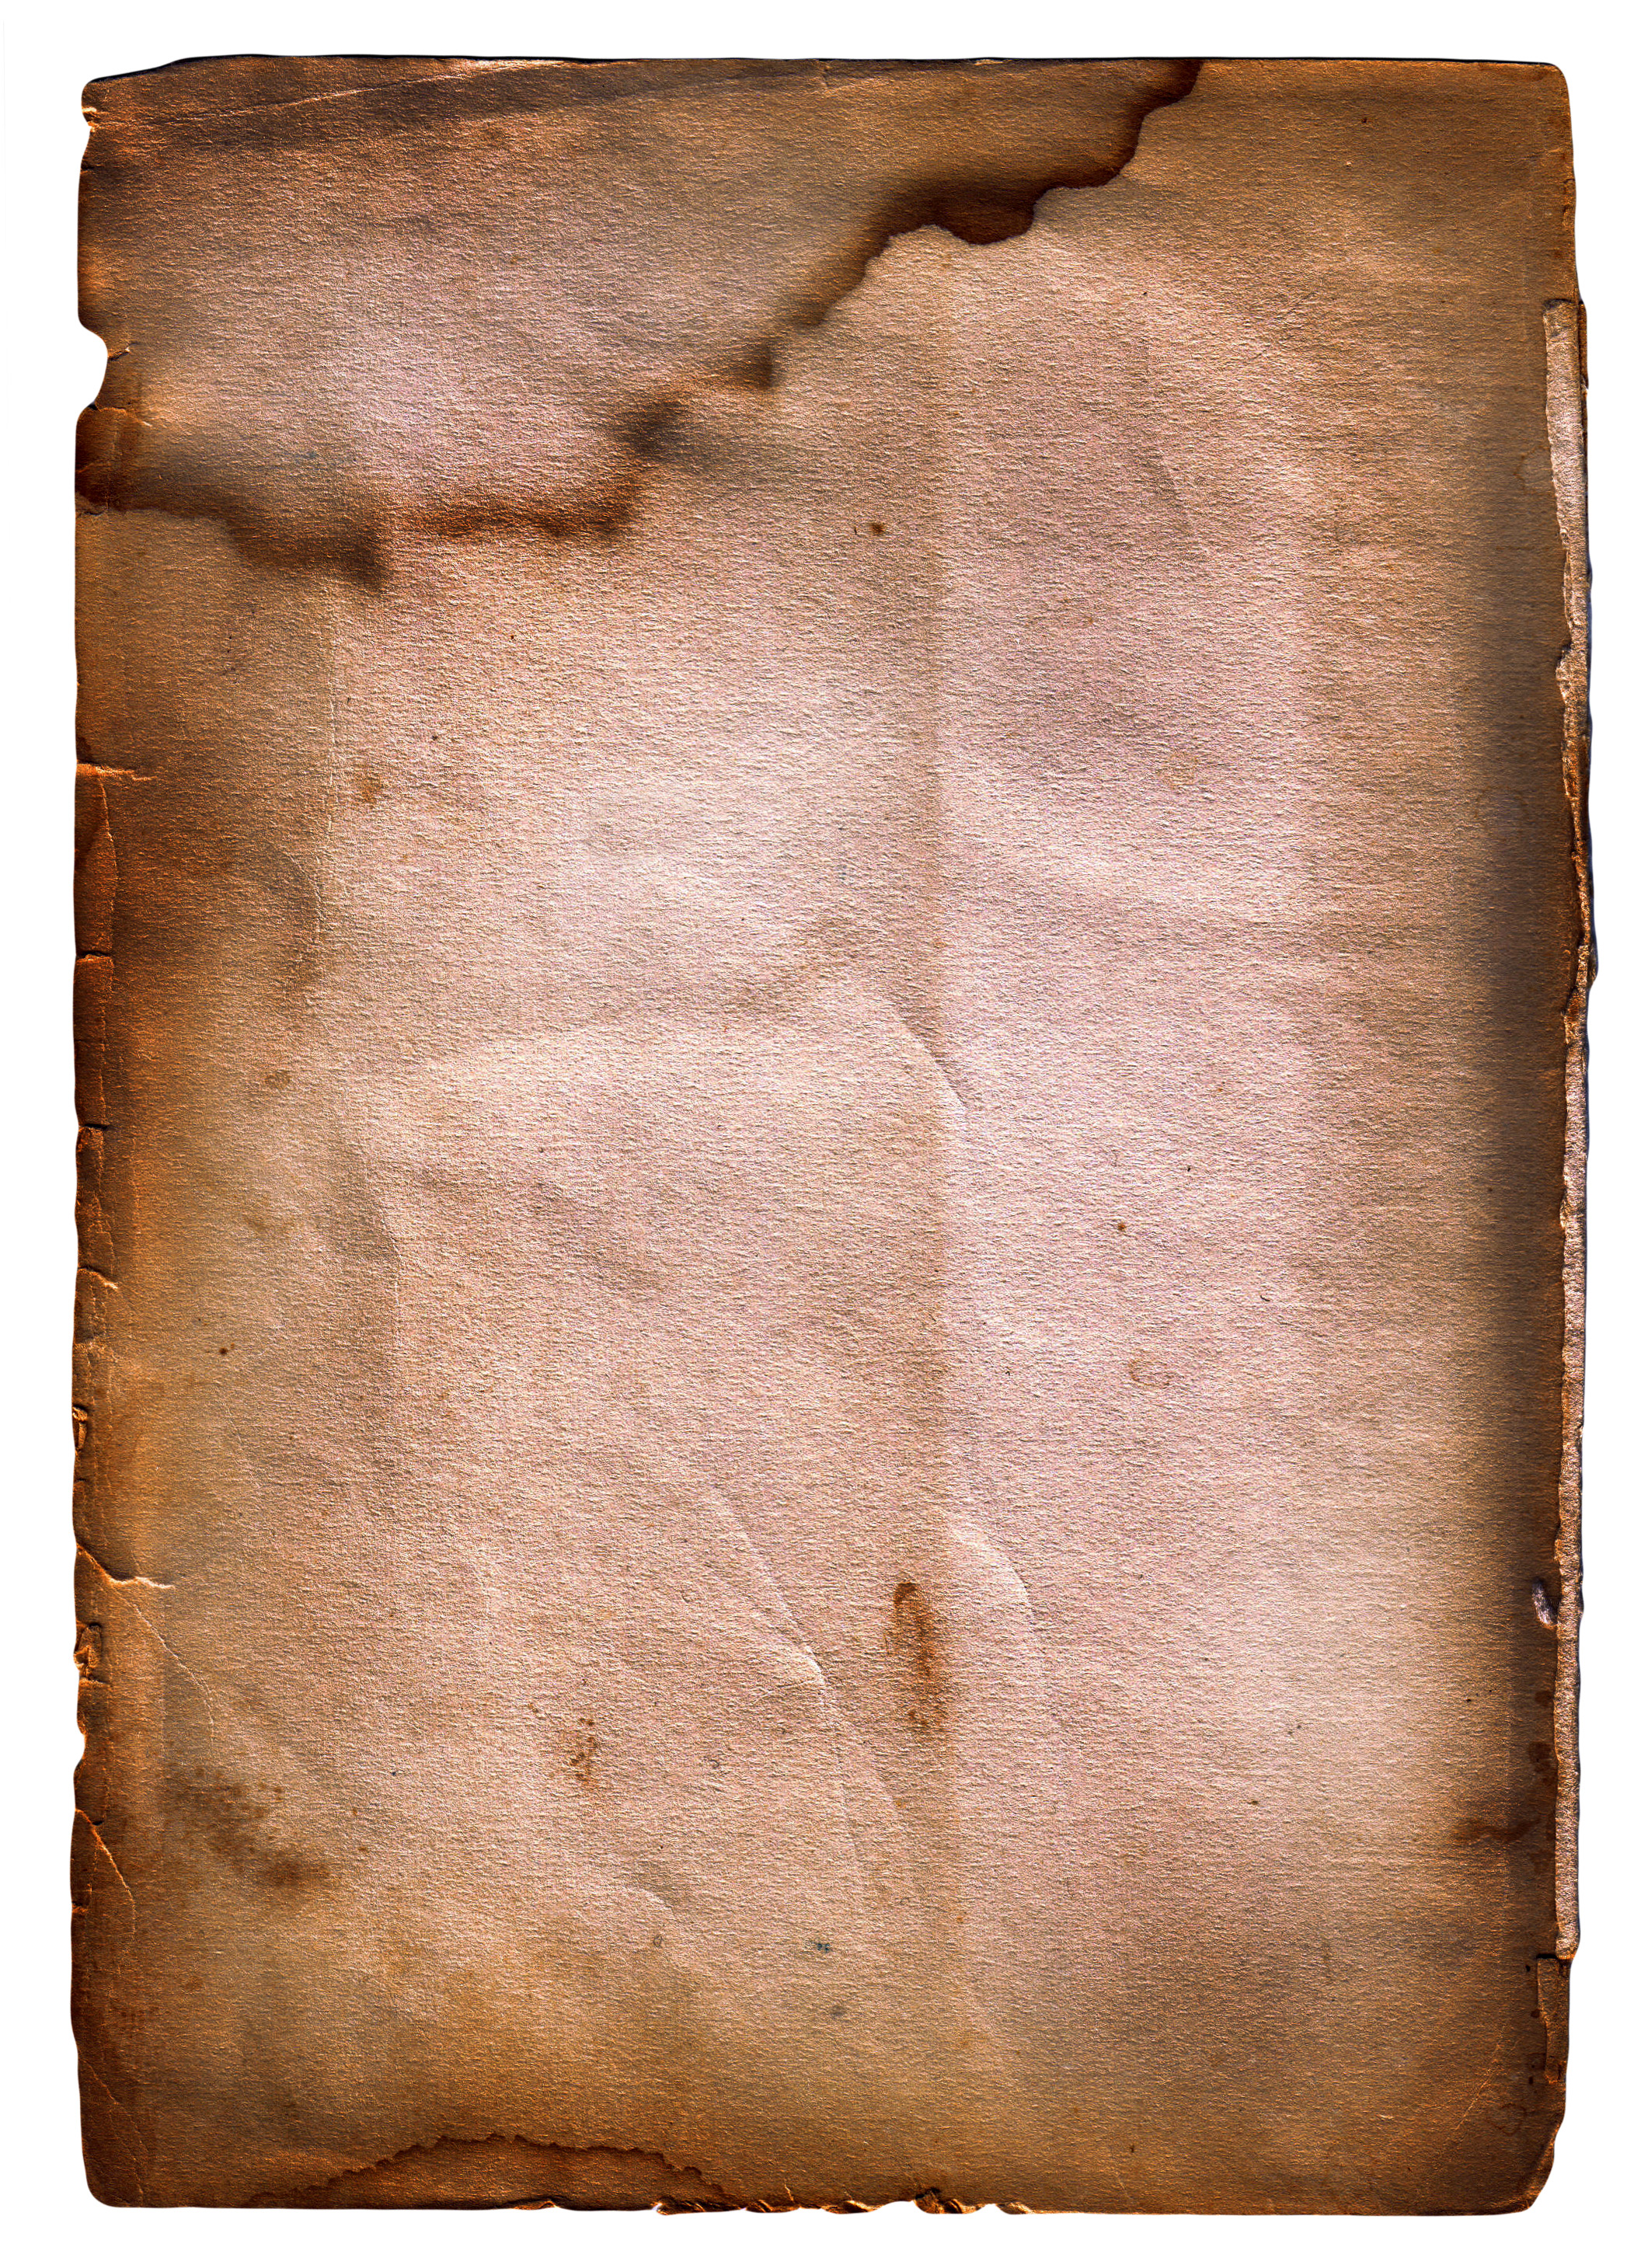 старая бумага, текстура, скачать фото, изображение фон старой бумаги, old paper texture background